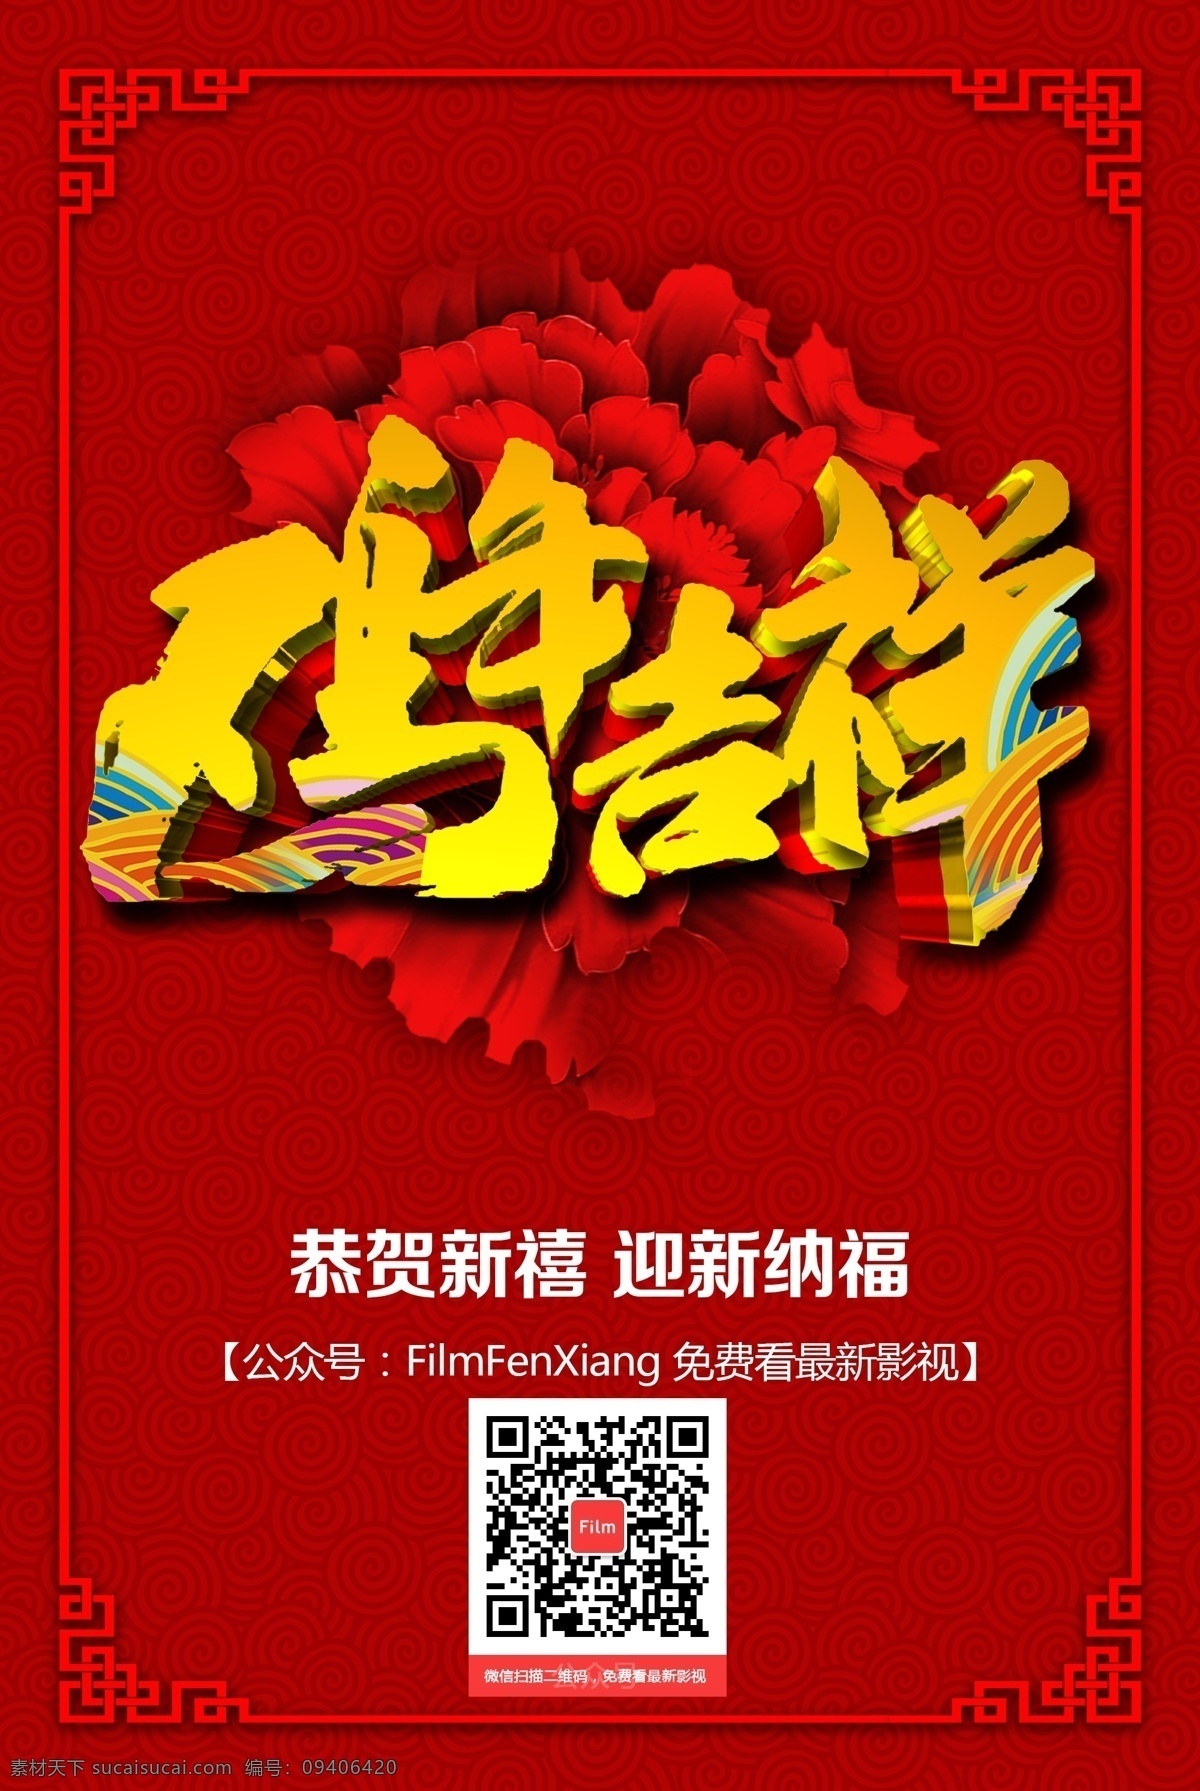 鸡年 吉祥 新年 鸡年吉祥 新年海报 鸡年海报 红色背景 中国风 2017